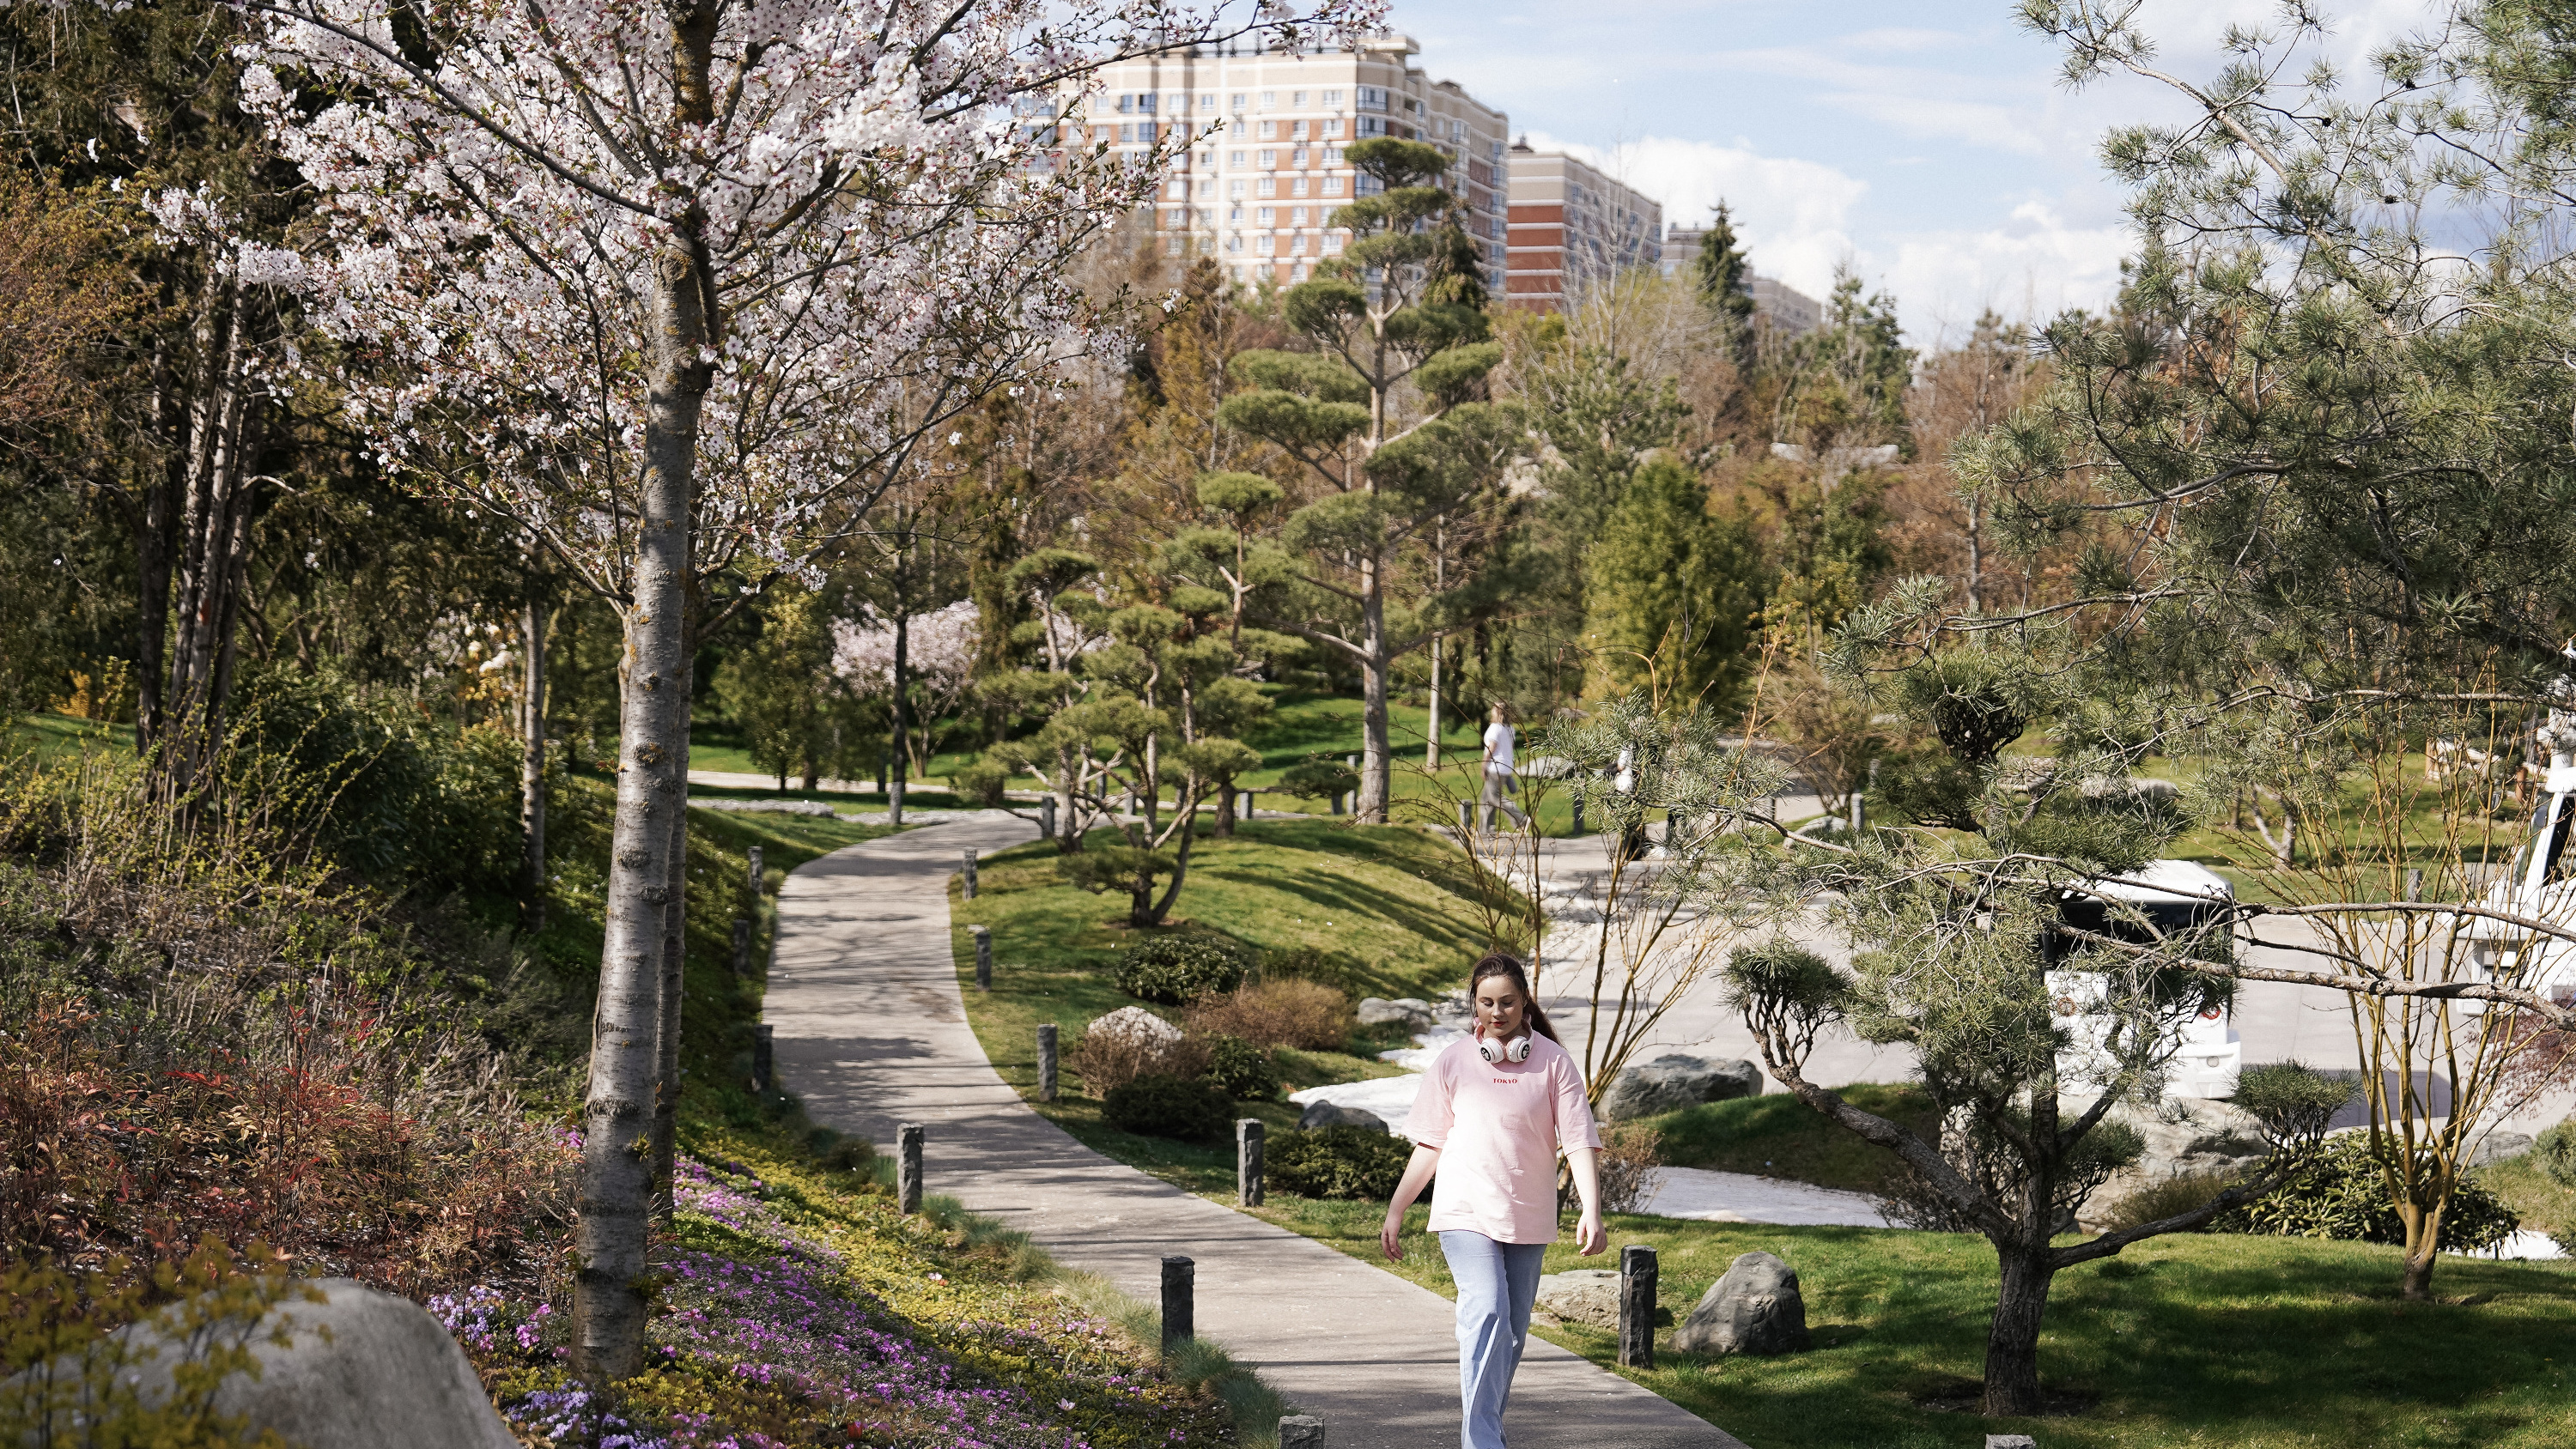 Безумно красиво. Большой фоторепортаж из весеннего Японского сада в парке «Краснодар»